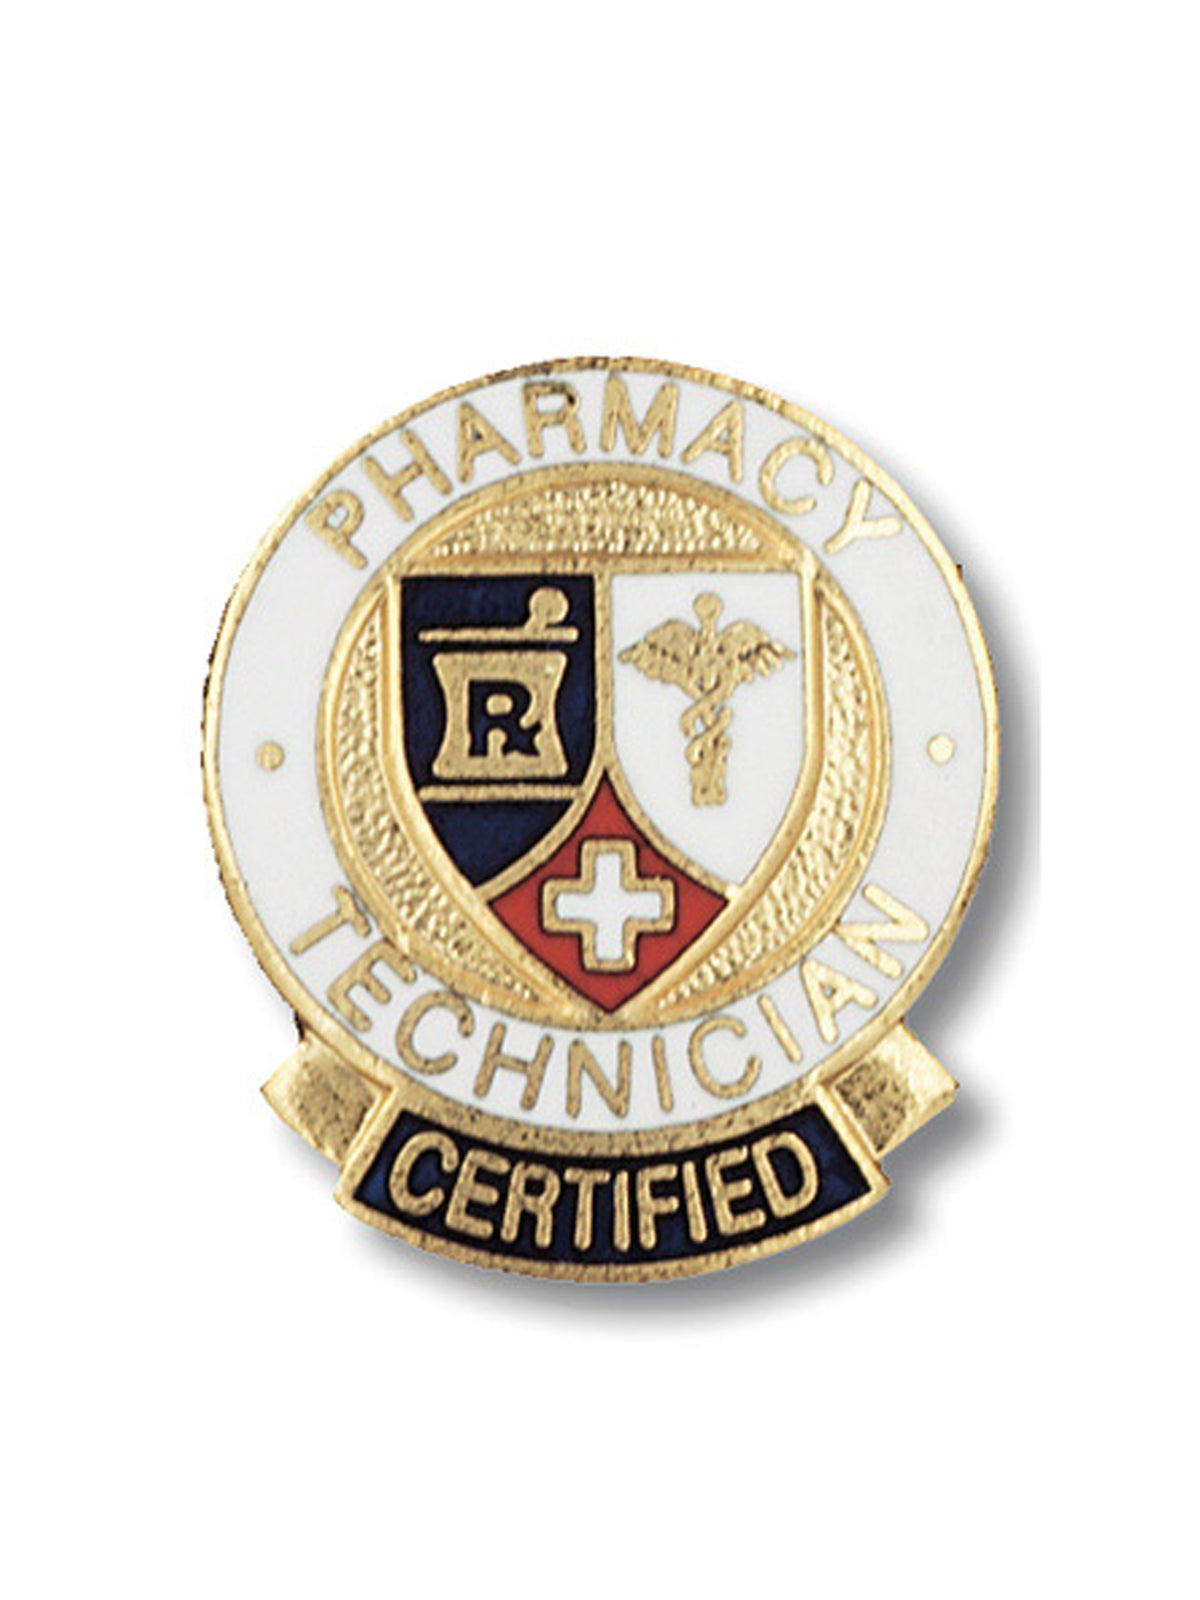 Certified Pharmacy Technician Cloisonne Pin - 1037 - Standard